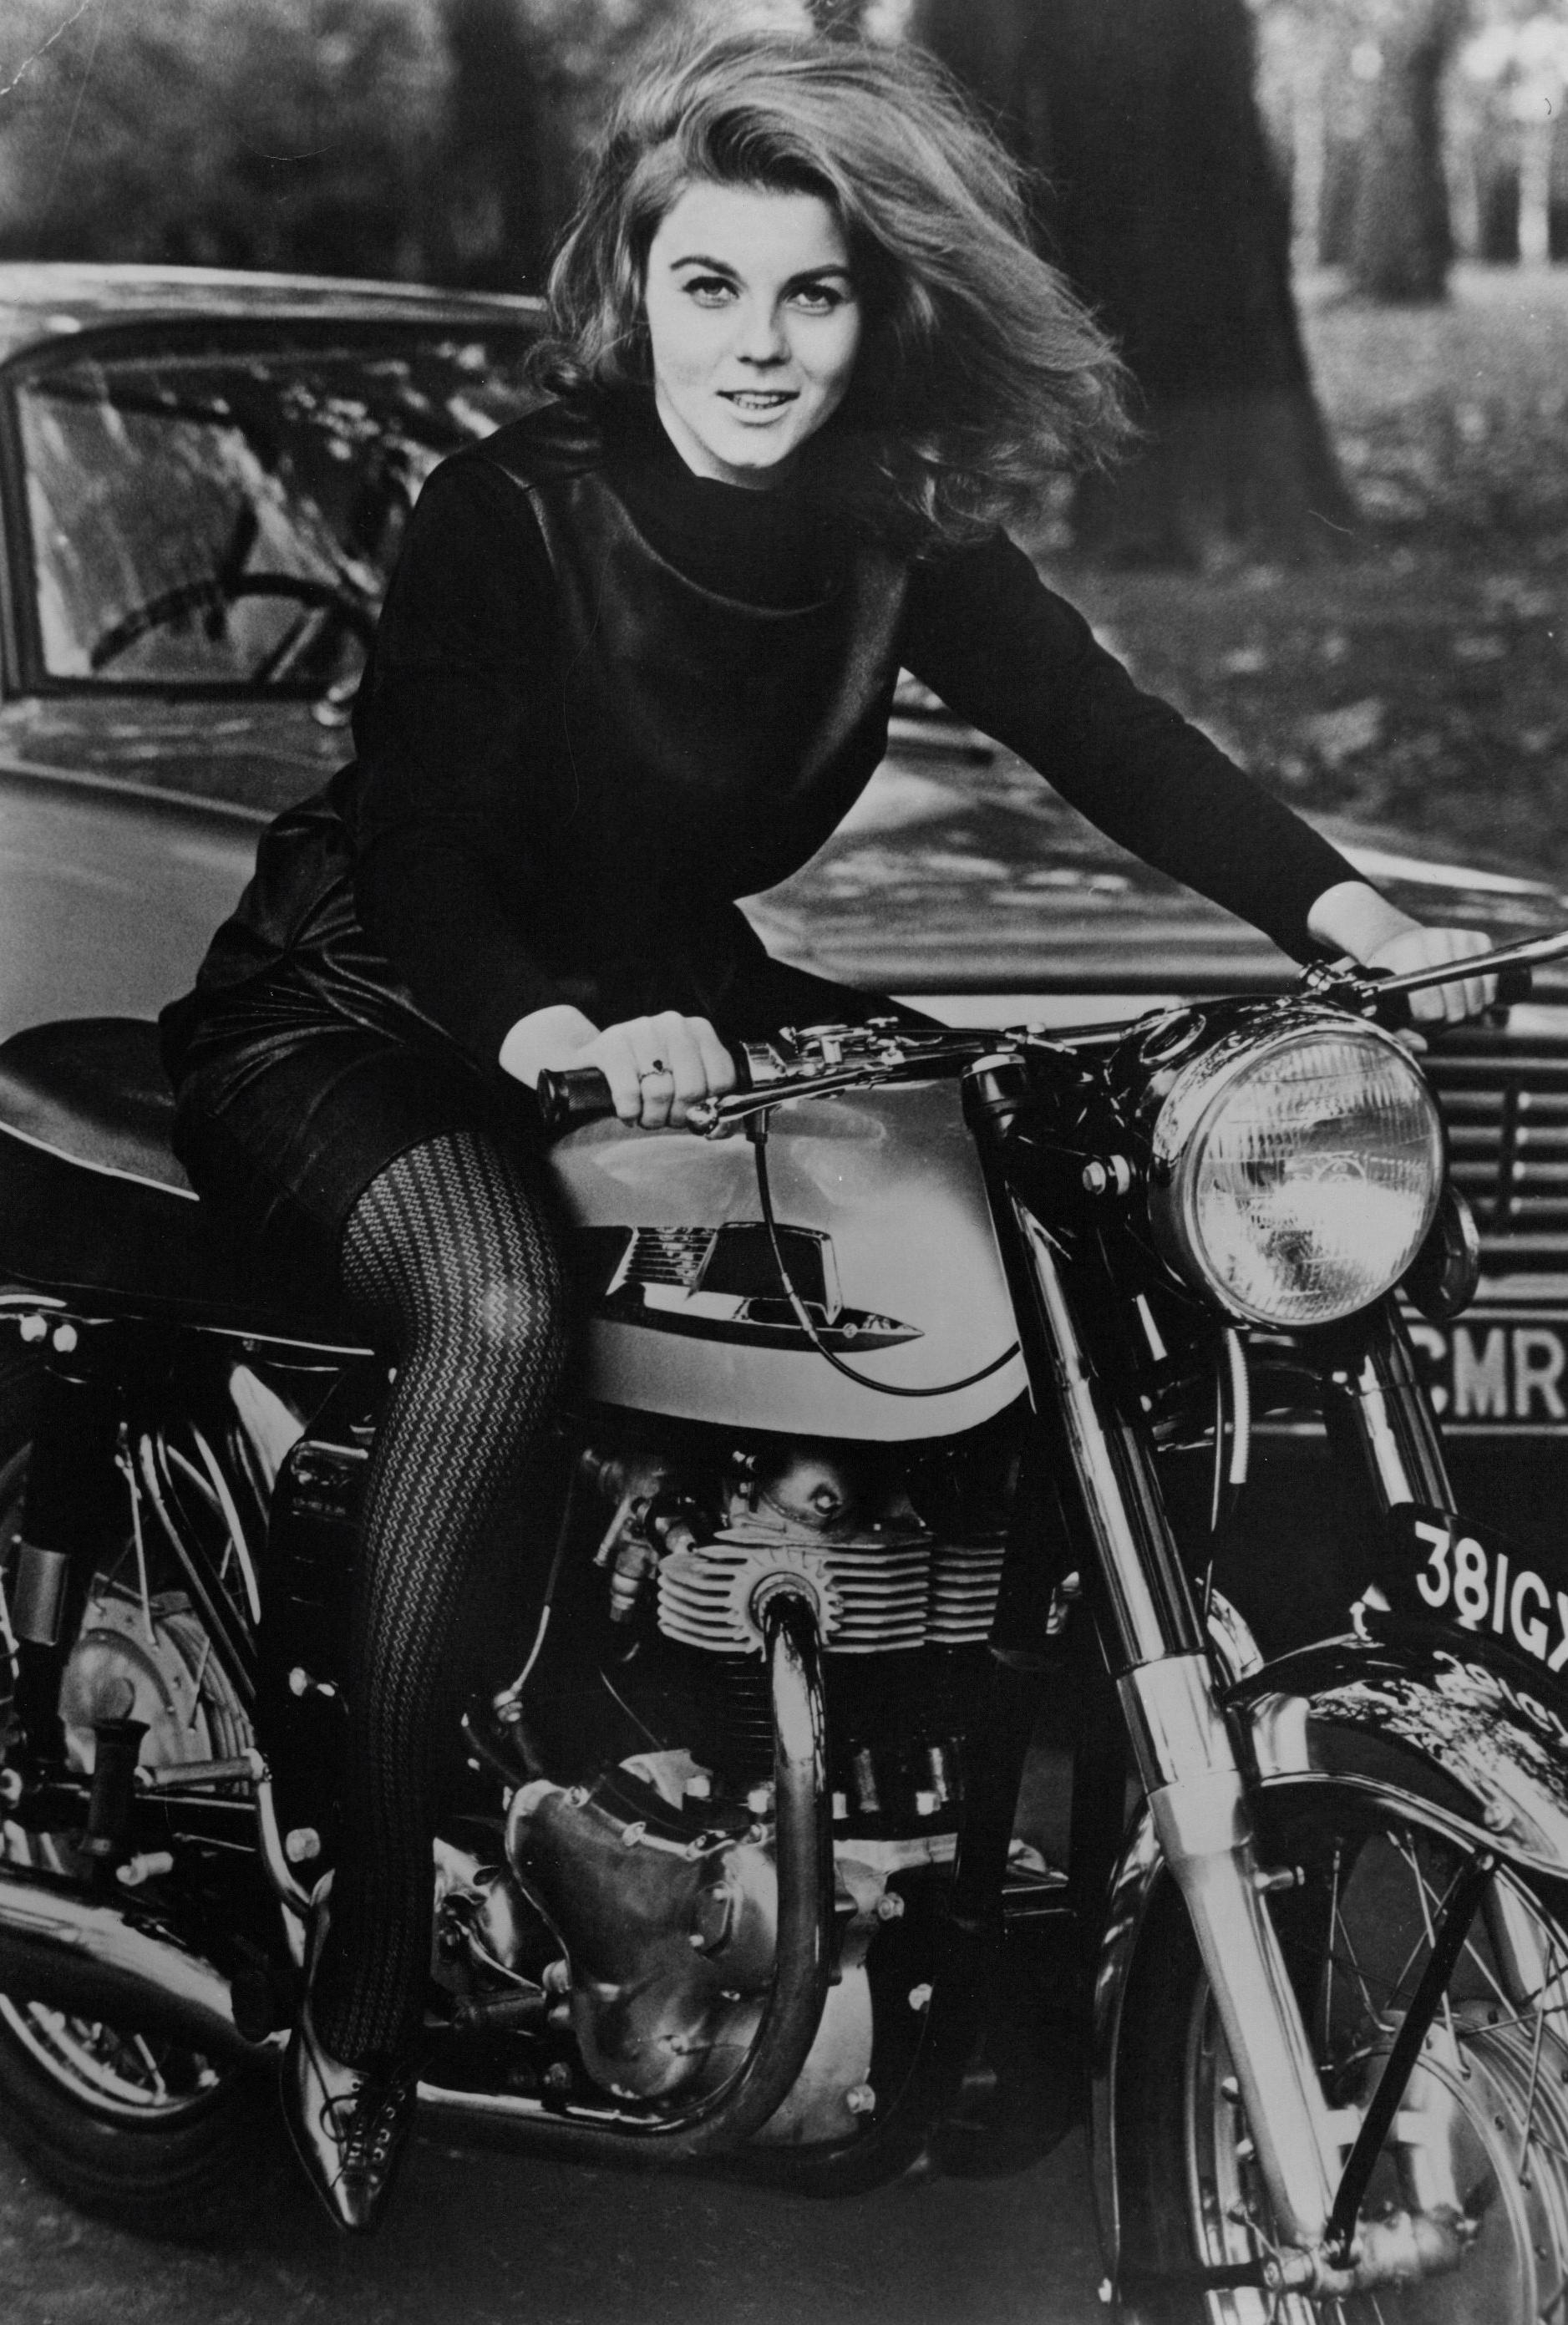 Unknown Portrait Photograph - Ann Margaret on Motorcycle Vintage Original Photograph